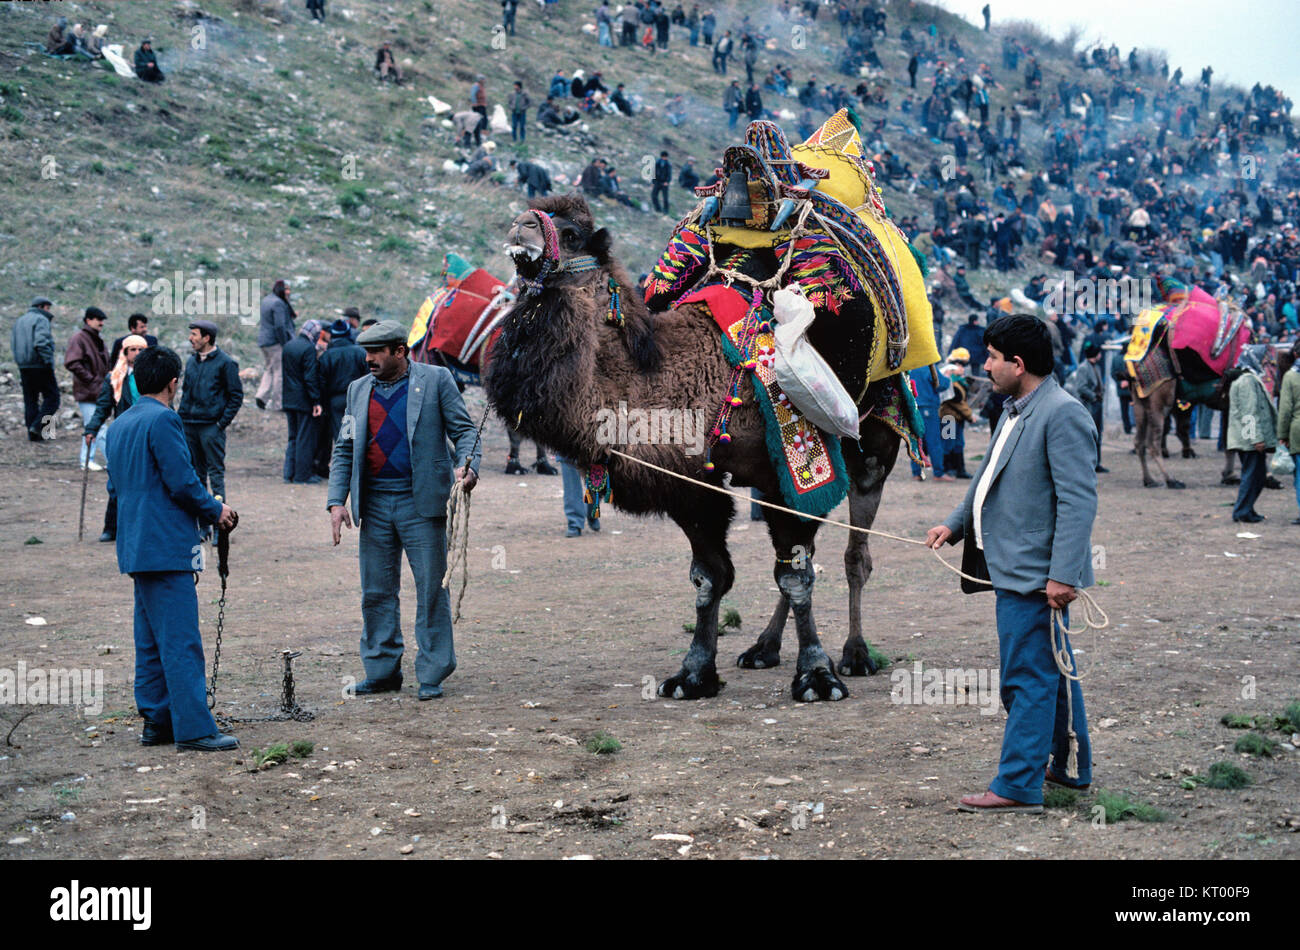 Los hombres turcos o turcos y vestidos de camellos o la lucha de camellos se reúnen para el Festival de lucha de camellos anual celebrada en el antiguo anfiteatro de Éfeso Turquía Foto de stock